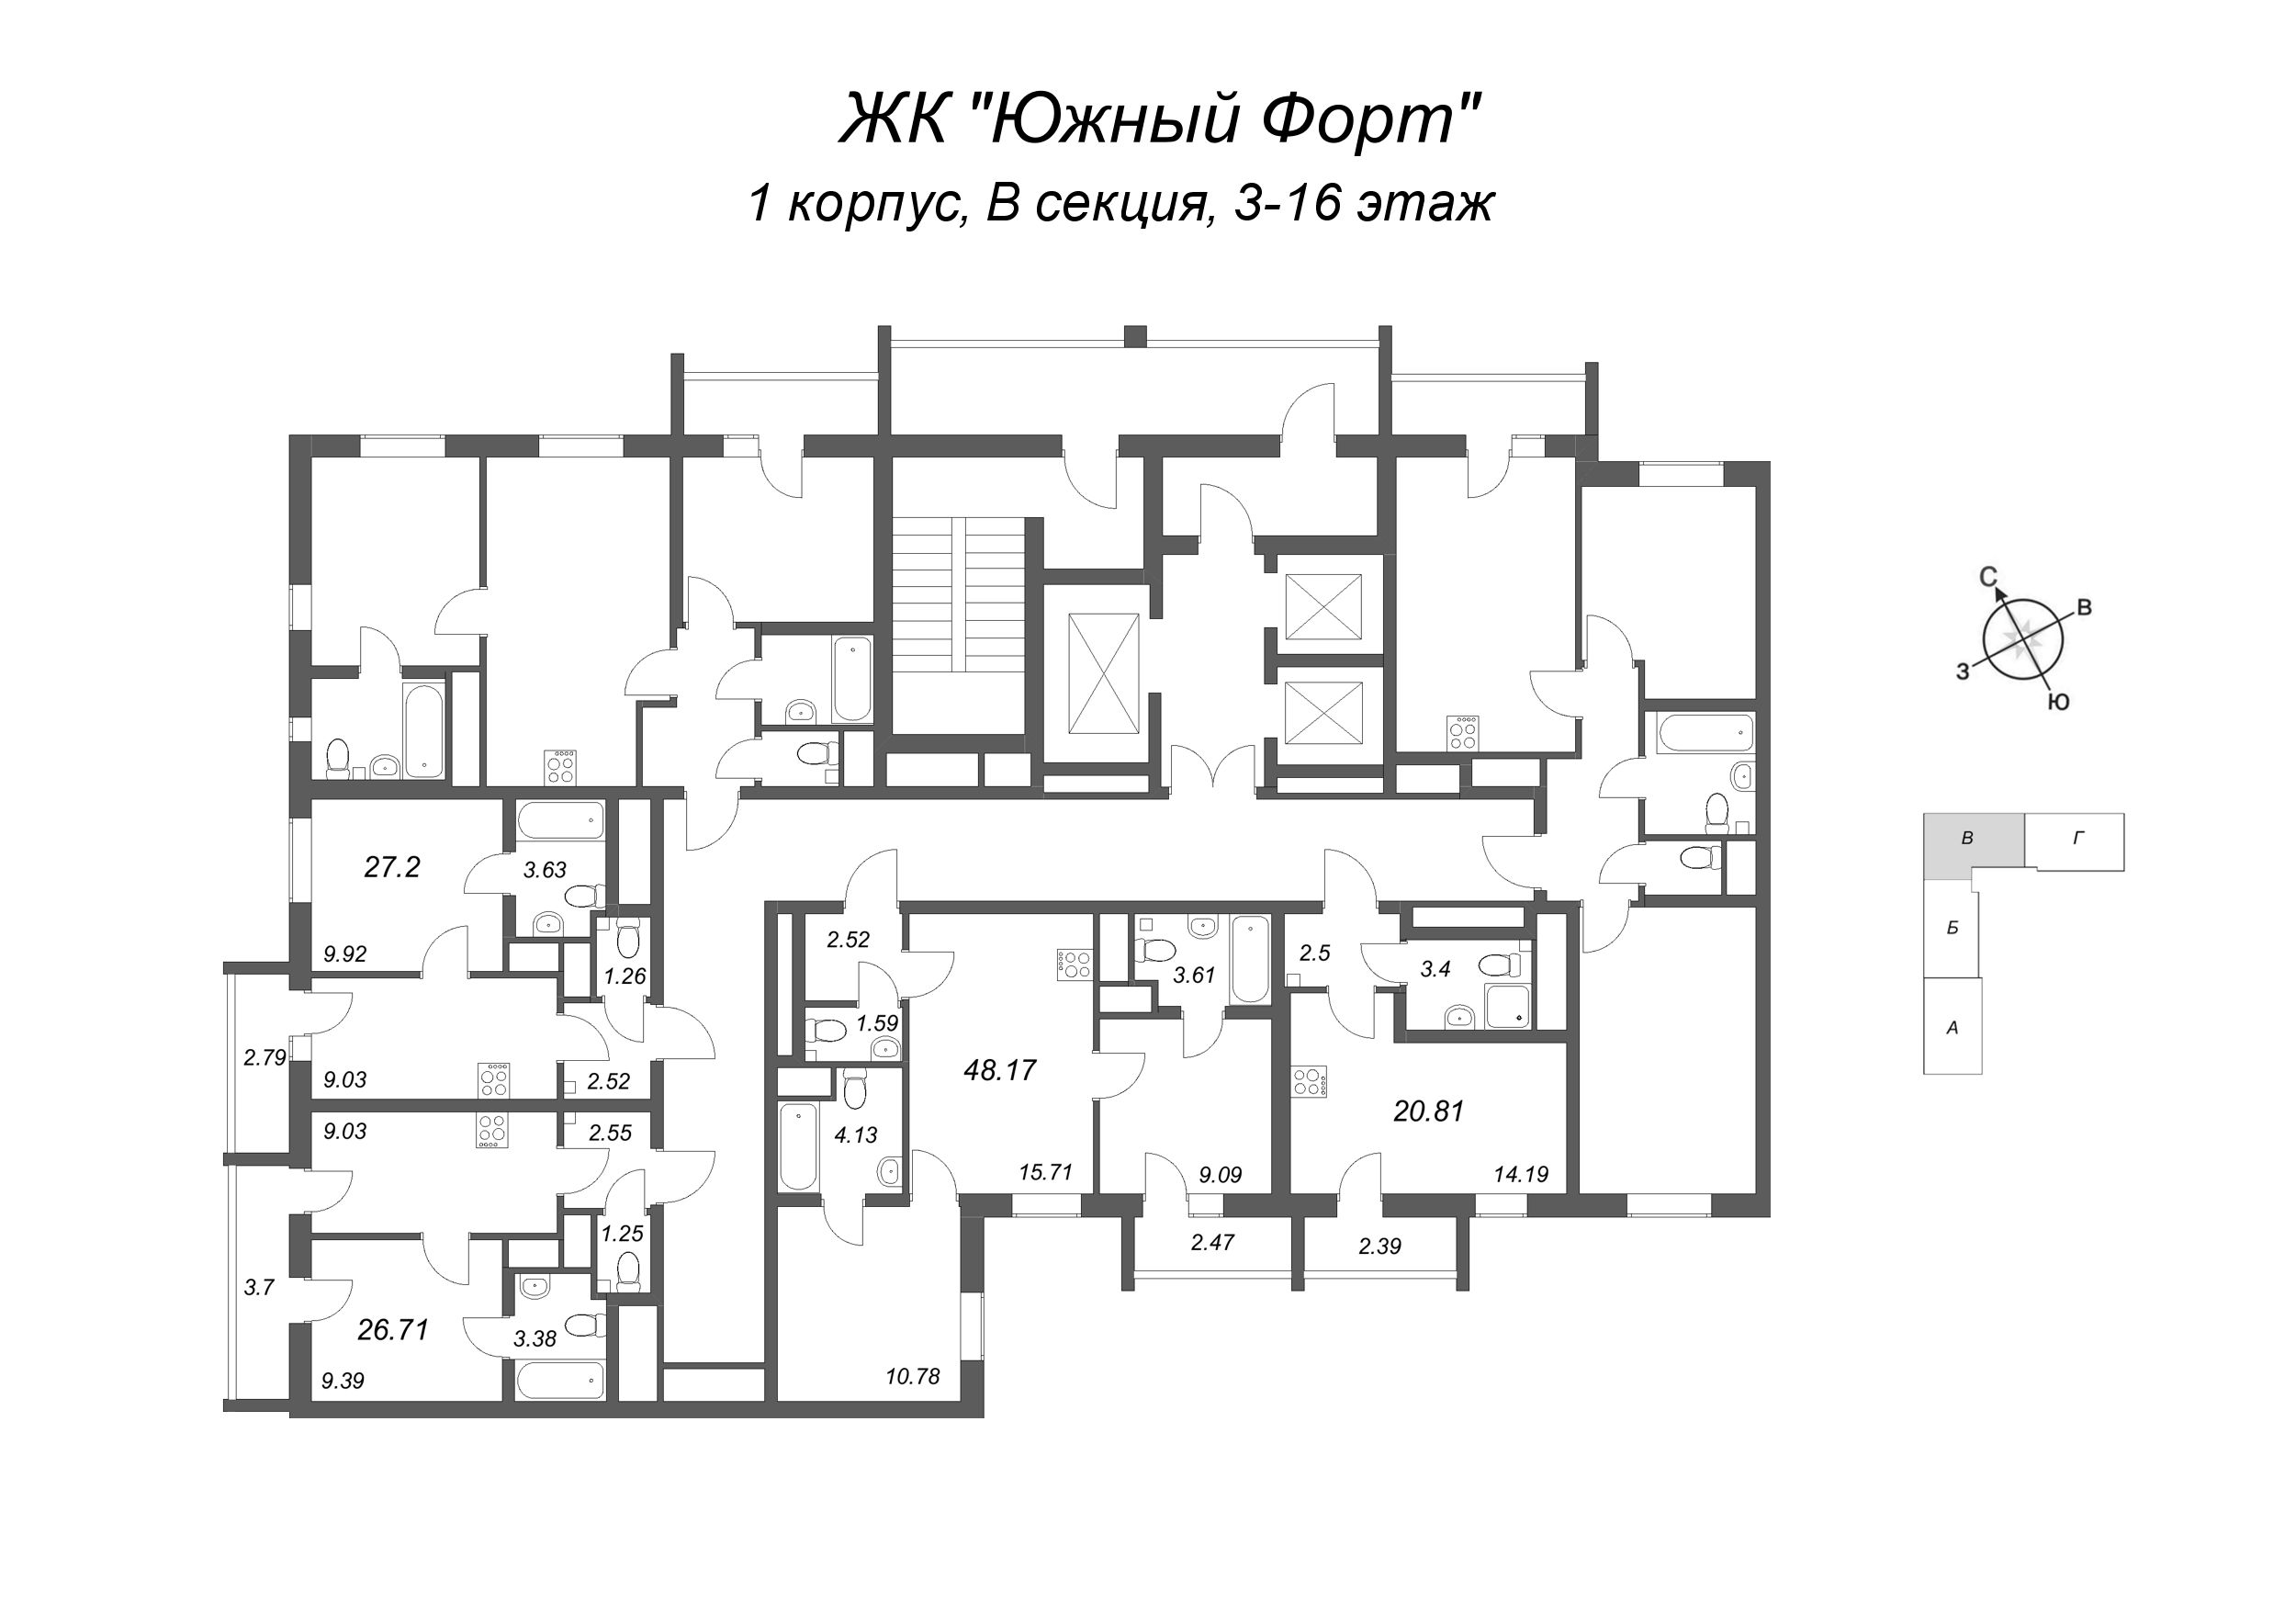 1-комнатная квартира, 26.71 м² в ЖК "Южный форт" - планировка этажа